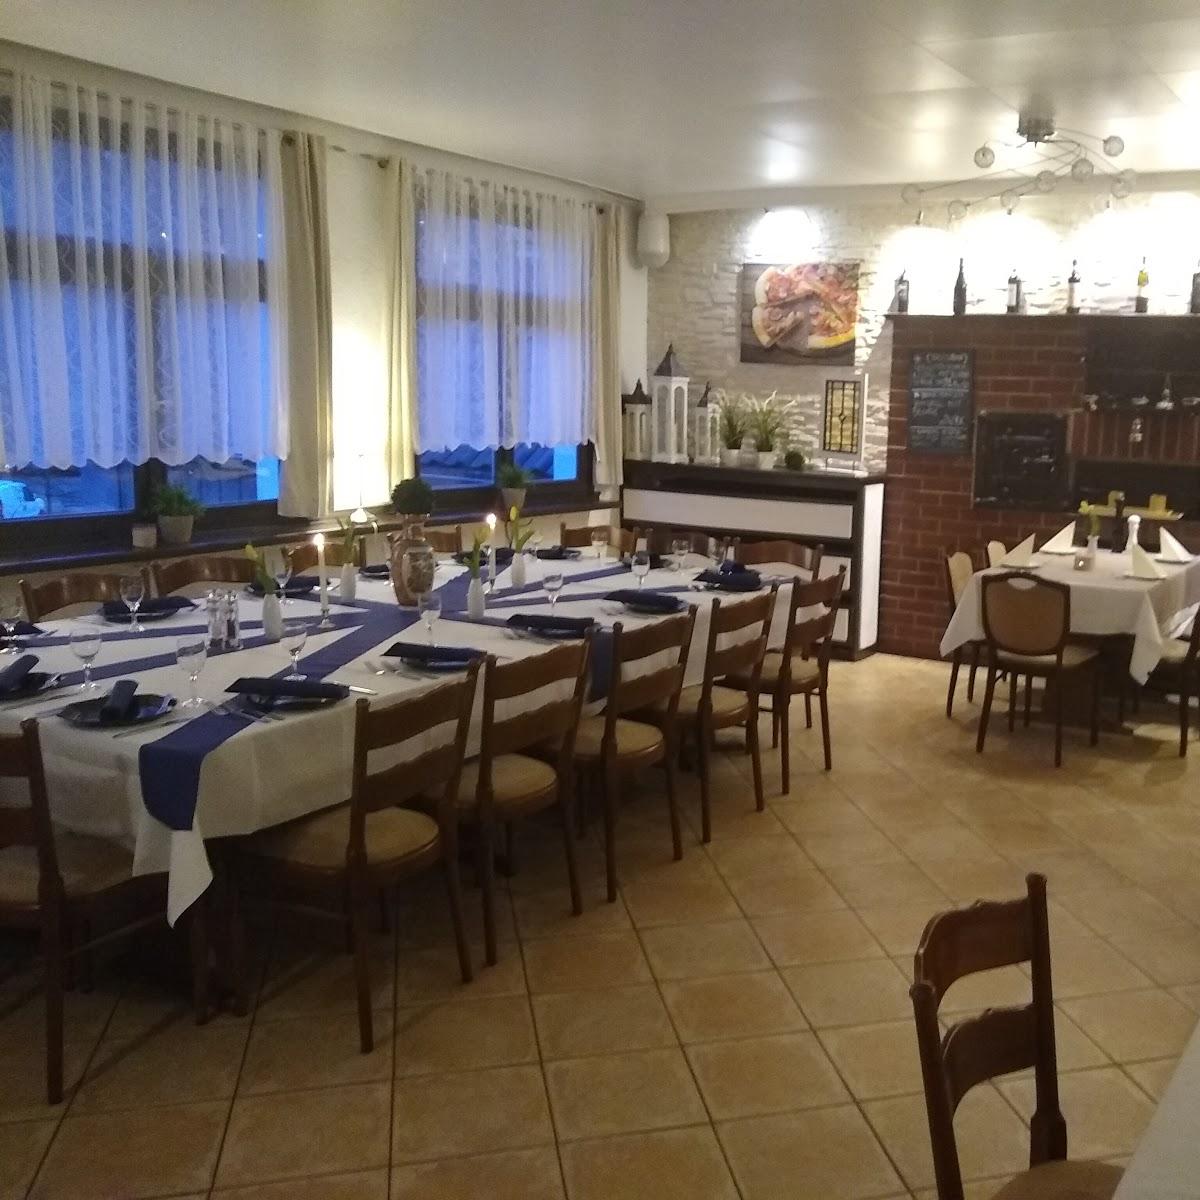 Restaurant "Pino